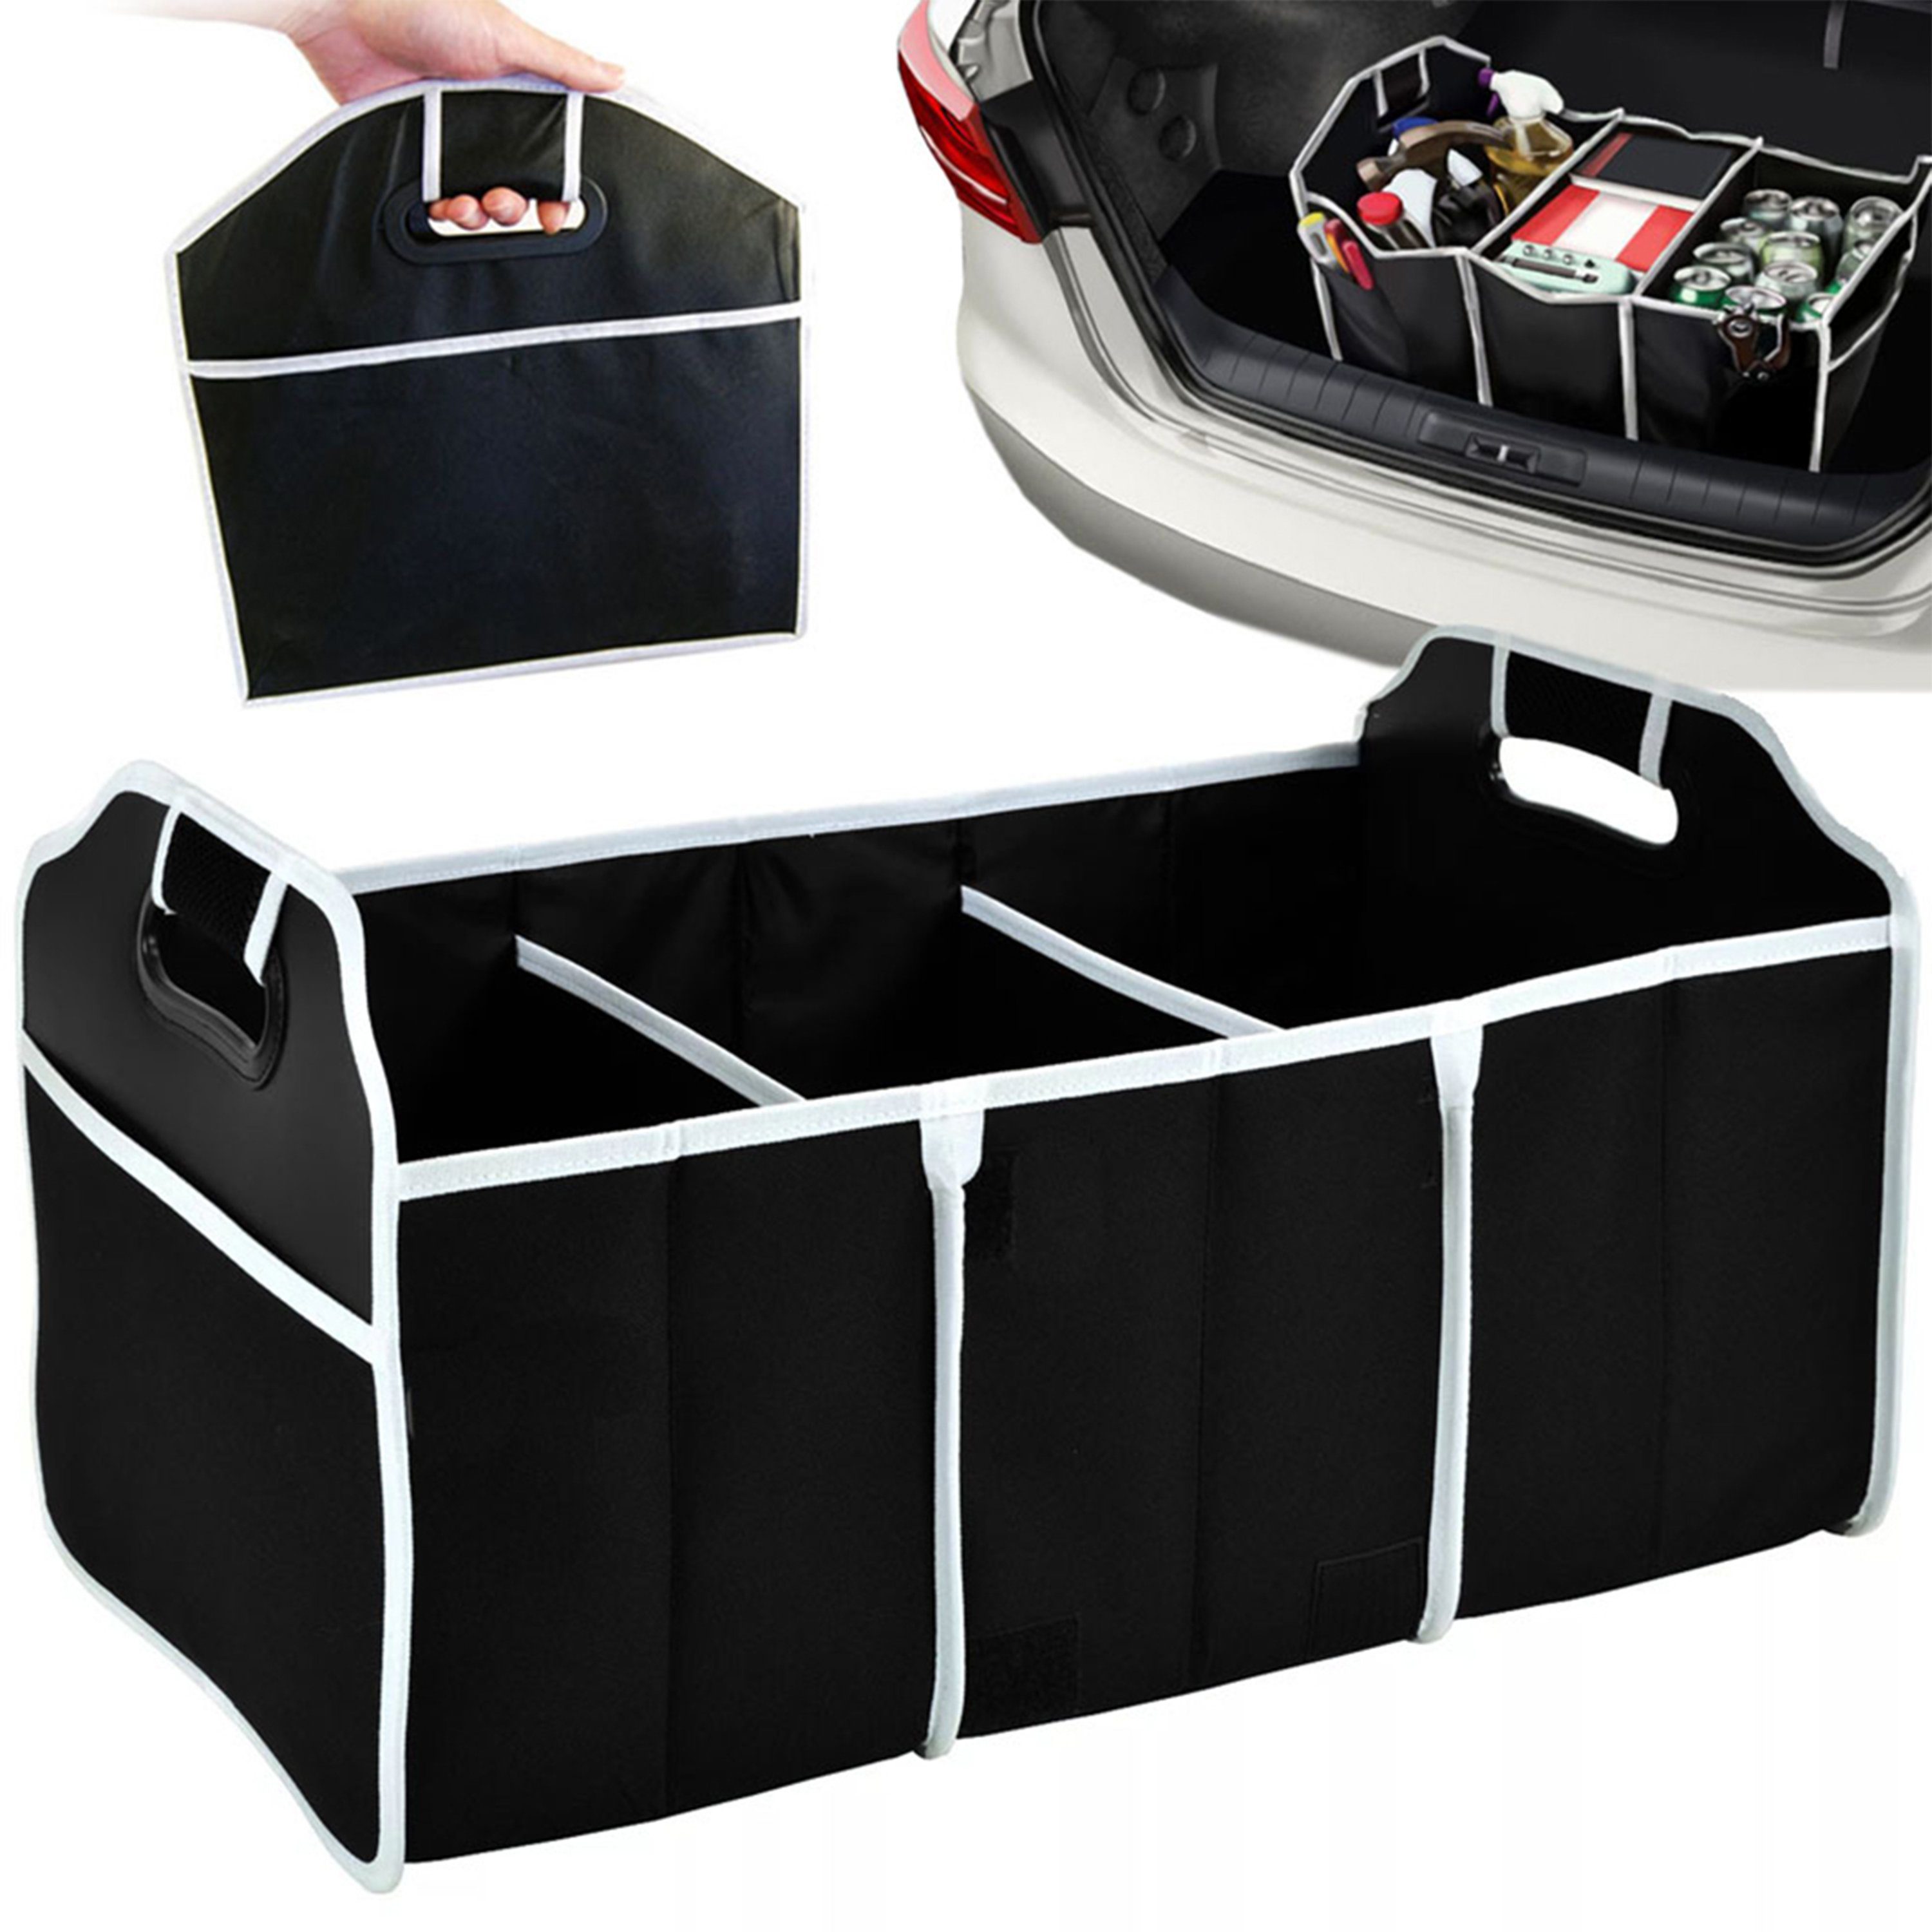 H-basics Organizer Kofferraum Organizer - Auto, Kofferraumtasche Faltbox  mit mit vielen Fächern, Aufbewahrungsbox Taschen, Faltbar